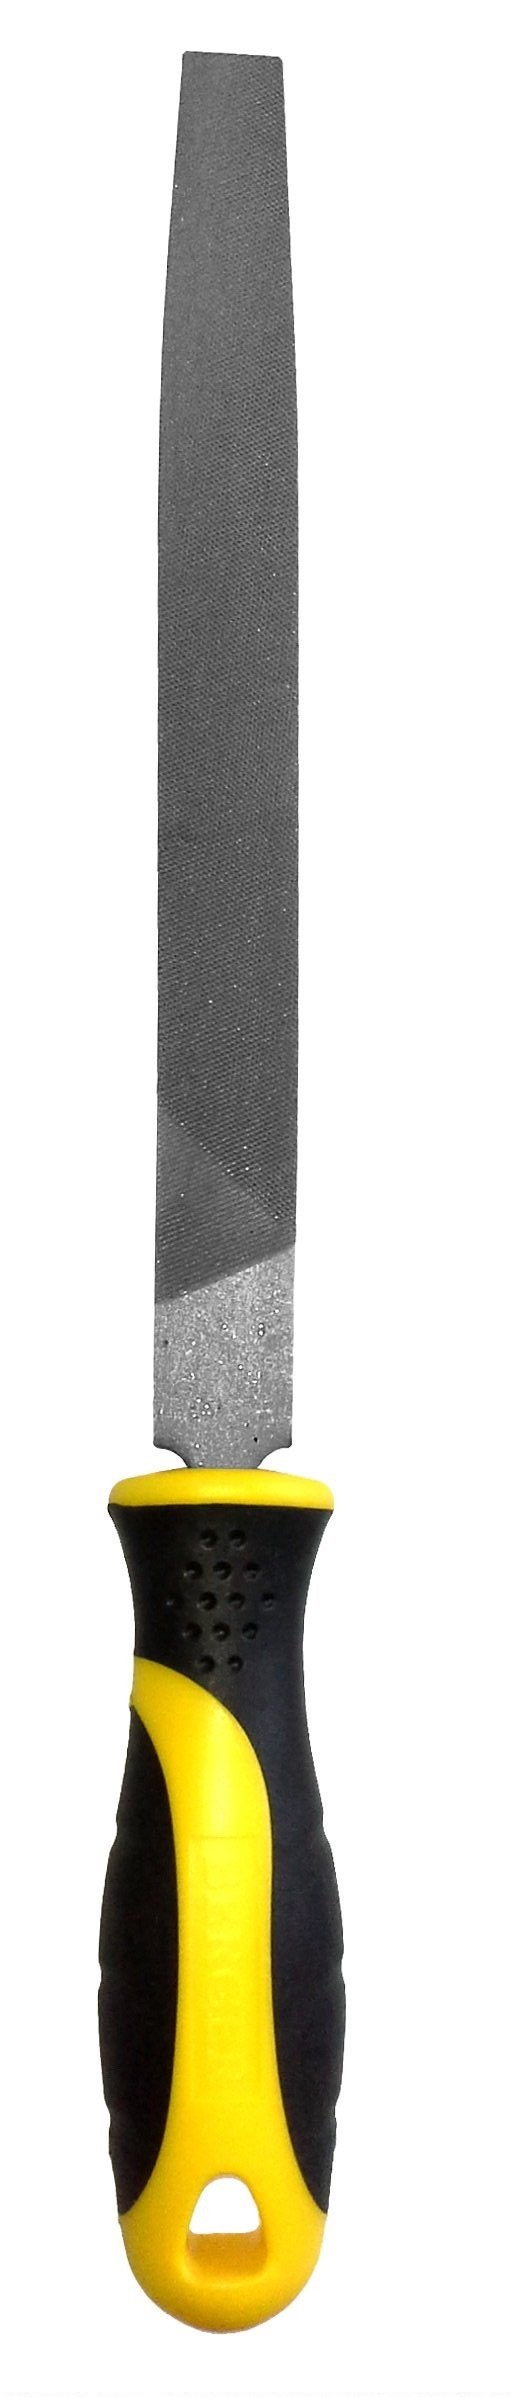 Напильник плоский с рукояткой 200 мм/BERGER Аналог арт. 09027